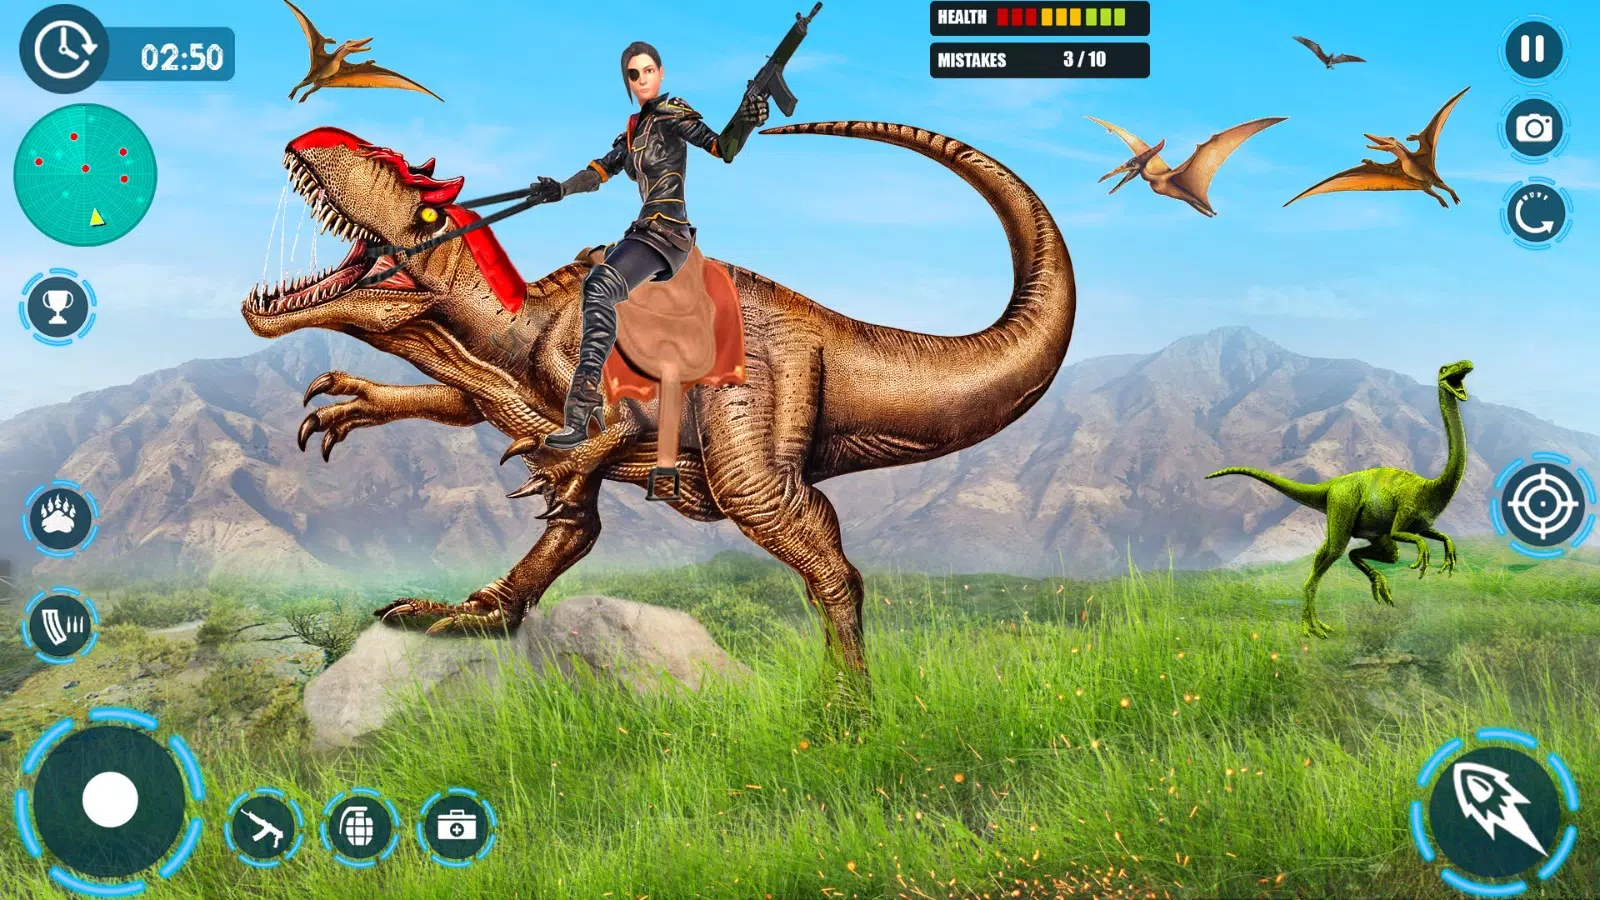 Dinosaur game: Dinosaur Hunter安卓版遊戲APK下載